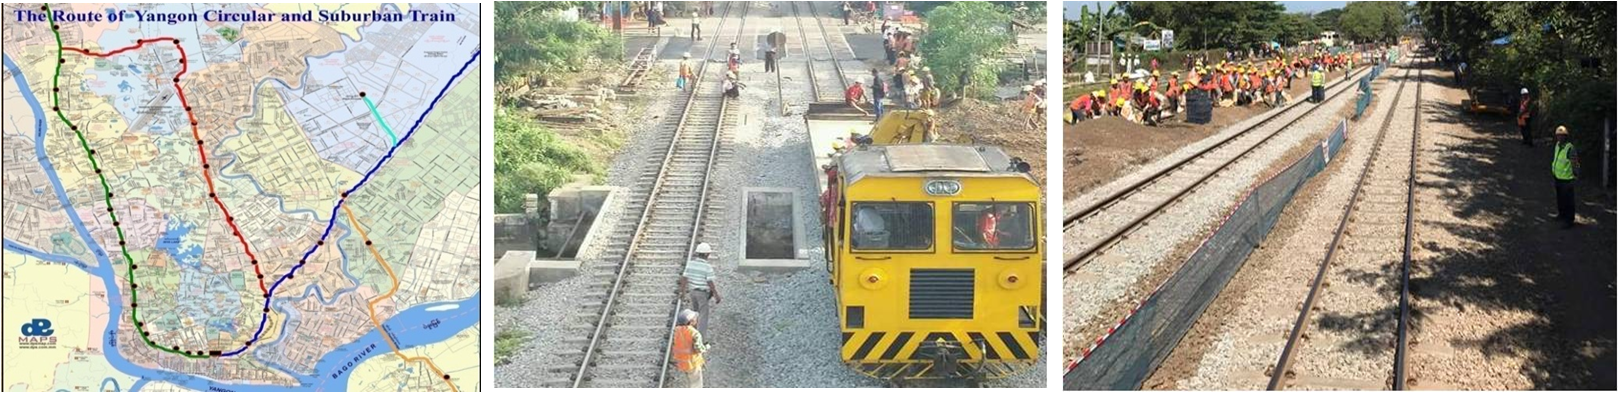 ရန်ကုန်မြို့ပတ် ရထားလမ်းအဆင့်မြှင့်တင်ရေးစီမံကိန်း(၅၉)မိုင် 